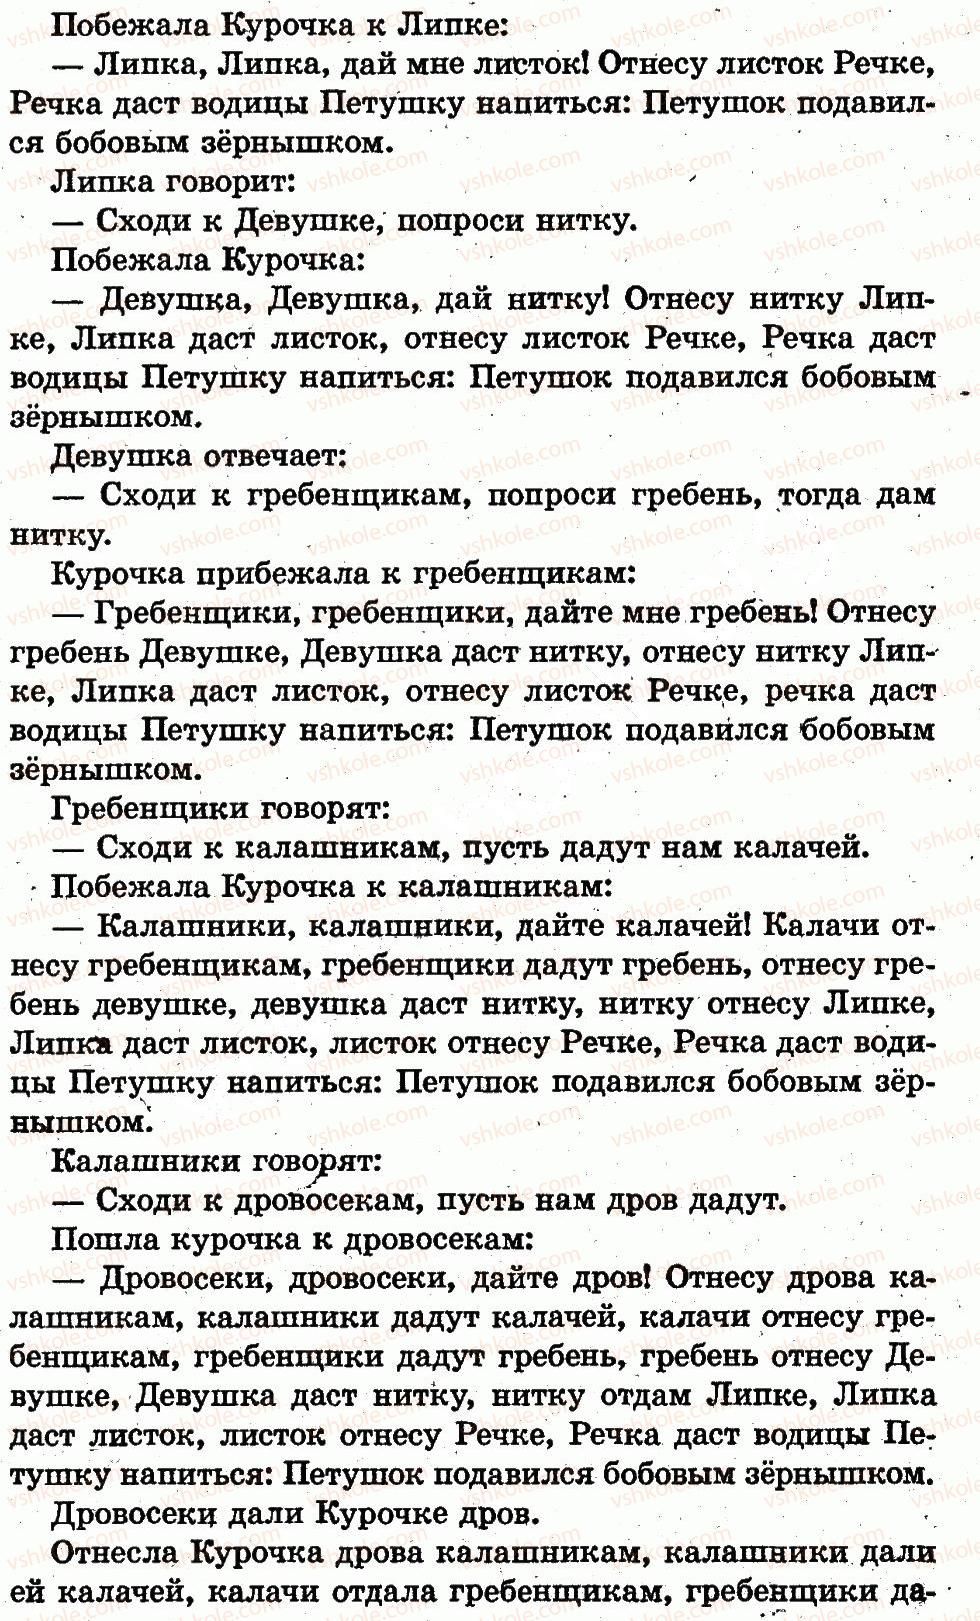 1-russkij-yazyk-in-lapshina-nn-zorka-2012--vremya-sutki-страница75-rnd5841.jpg